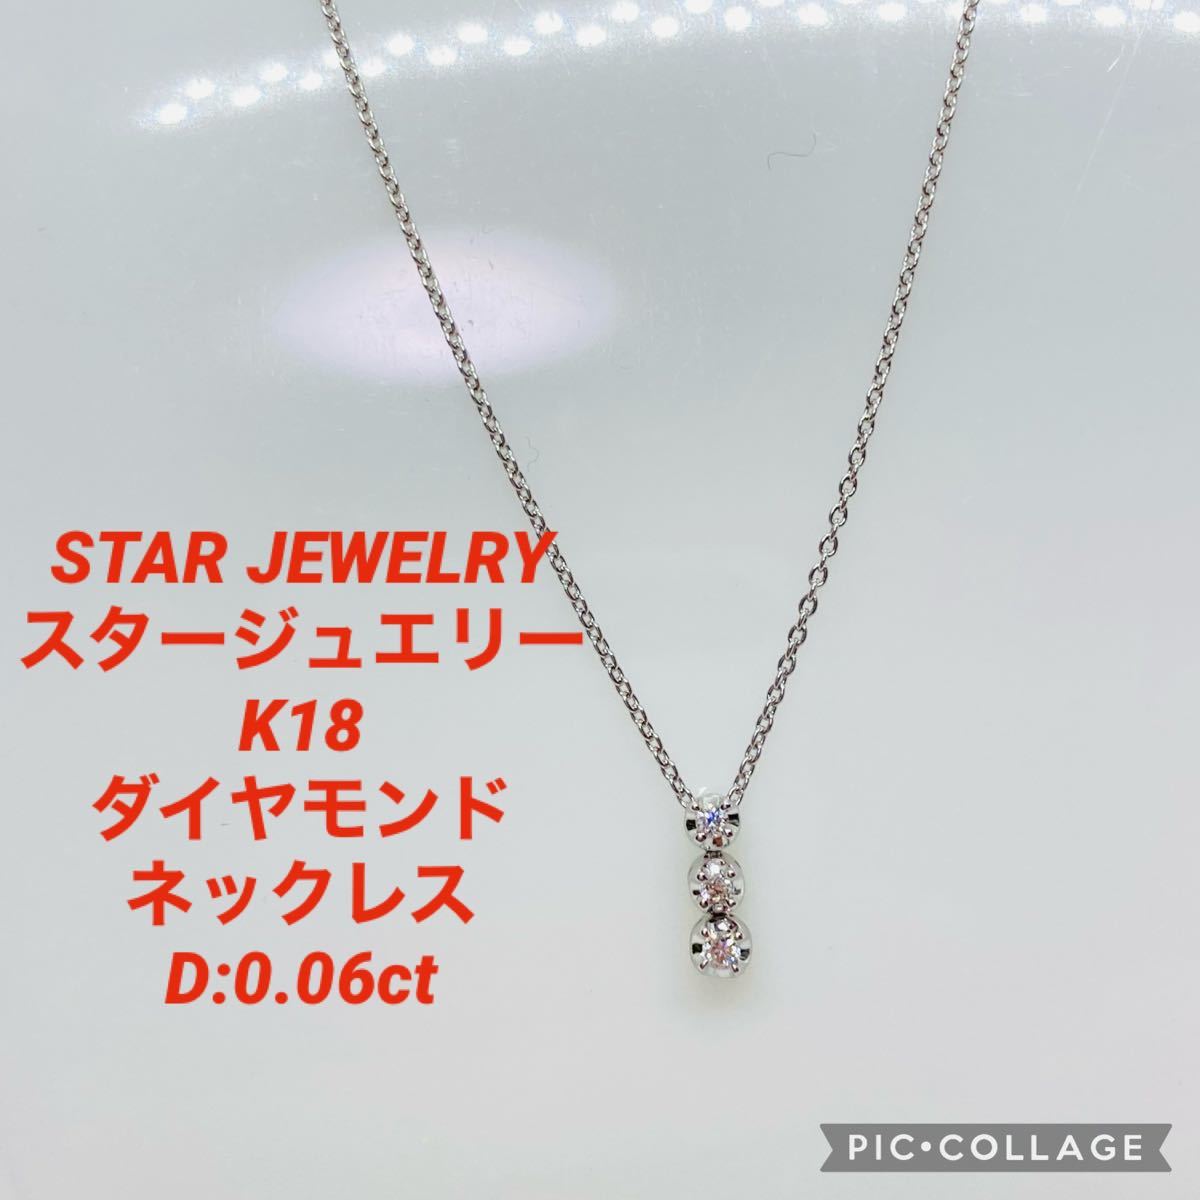 美品 STAR JEWELRY スタージュエリー K18 ダイヤモンド ネックレス D